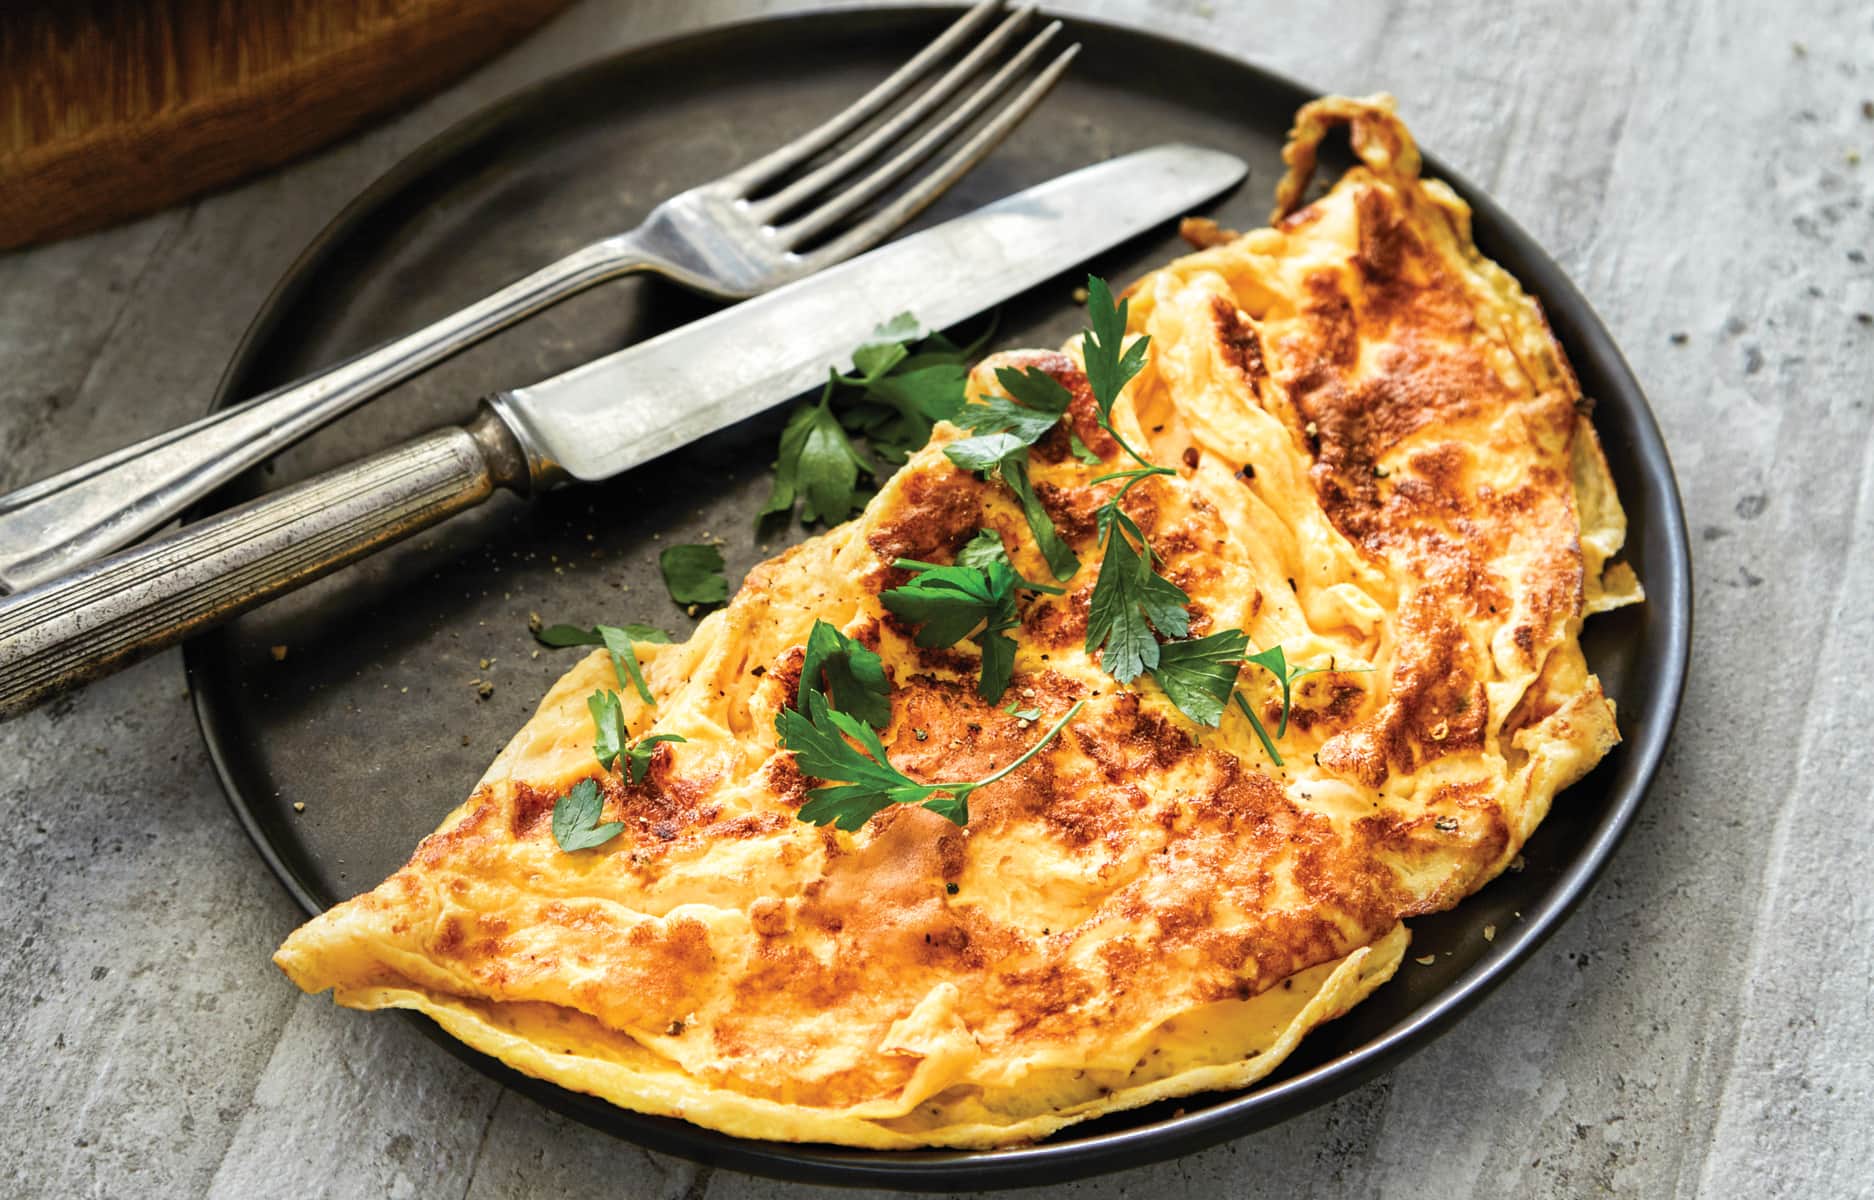 https://media.healthyfood.com/wp-content/uploads/2018/02/Basic-omelette.jpg